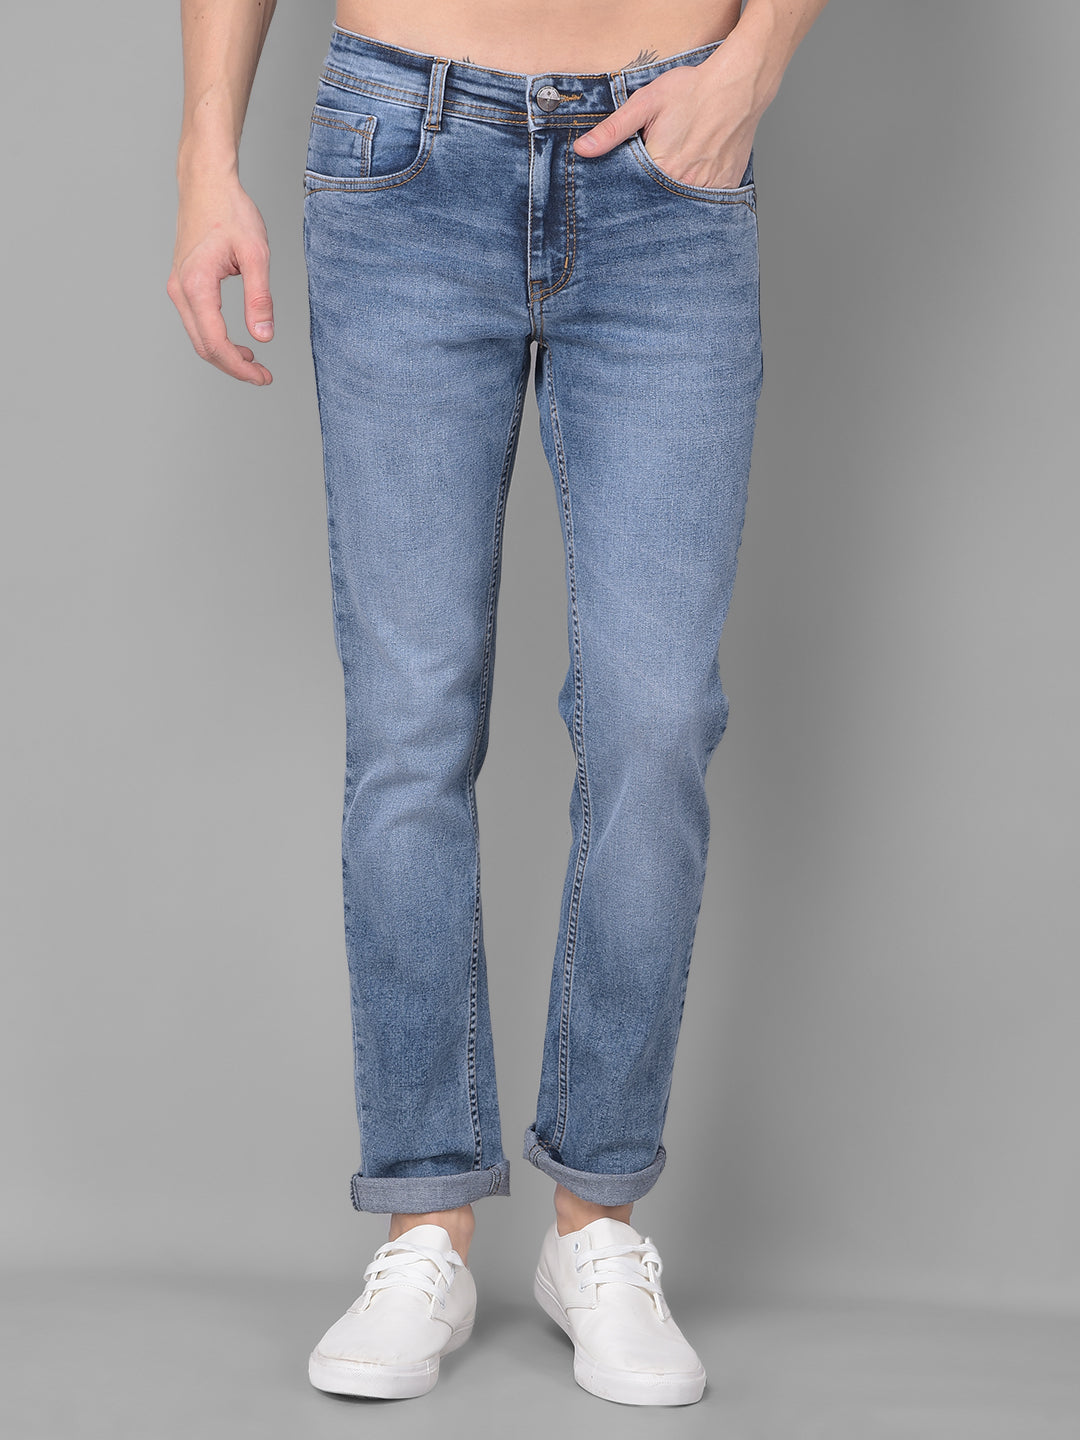 Jeans for Men | Buy Best Mens Denim Jeans | Cobb Italy